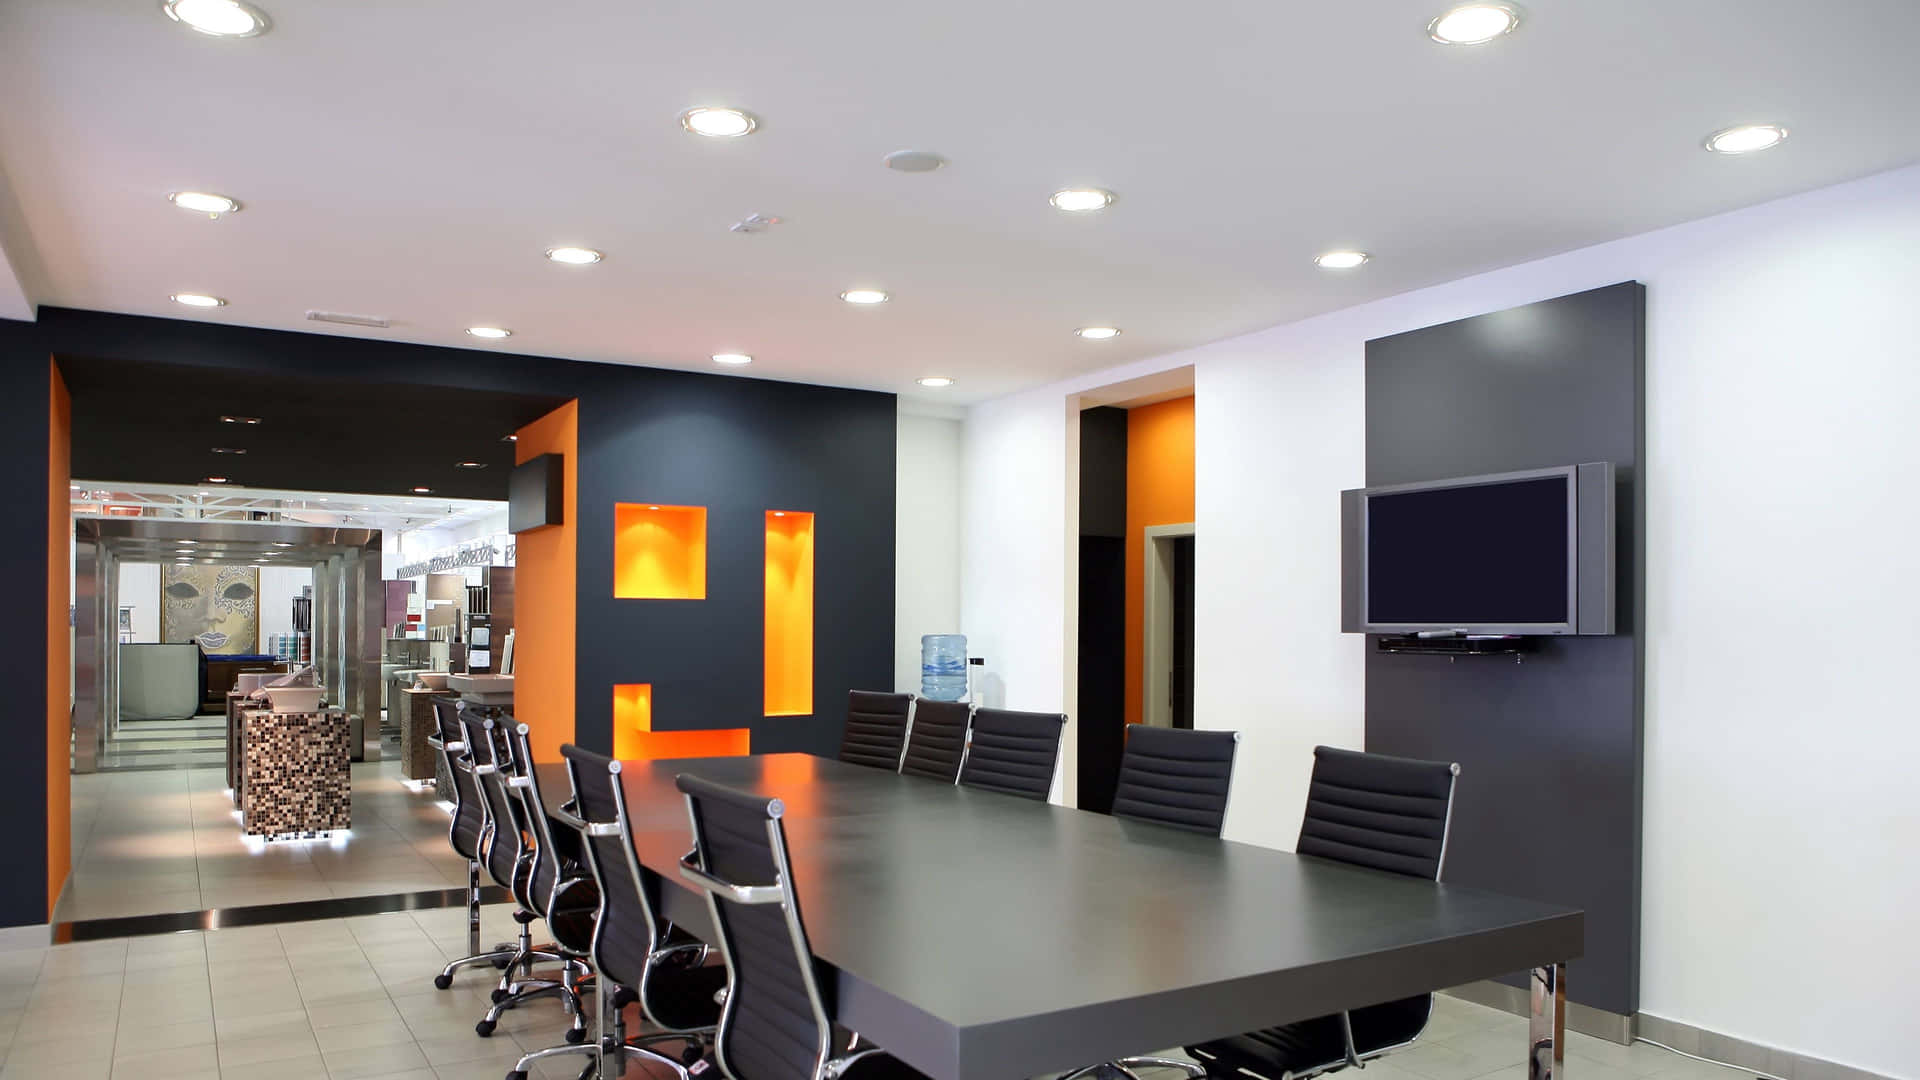 Einkonferenzraum Mit Orangefarbenen Wänden Und Schwarzen Stühlen.